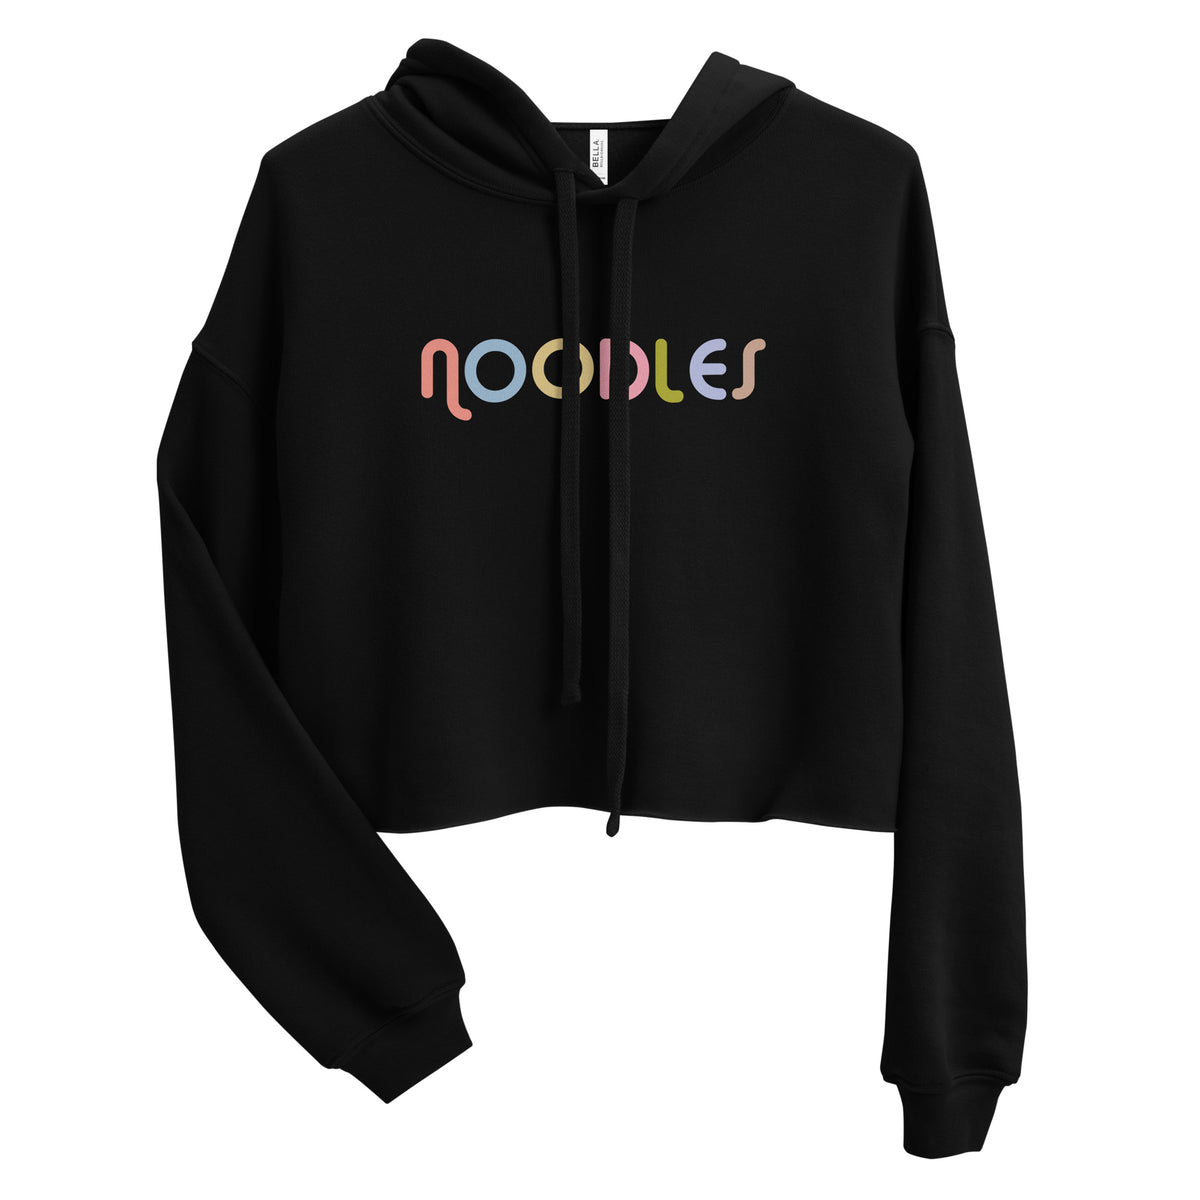 Noodles Crop Hoodie